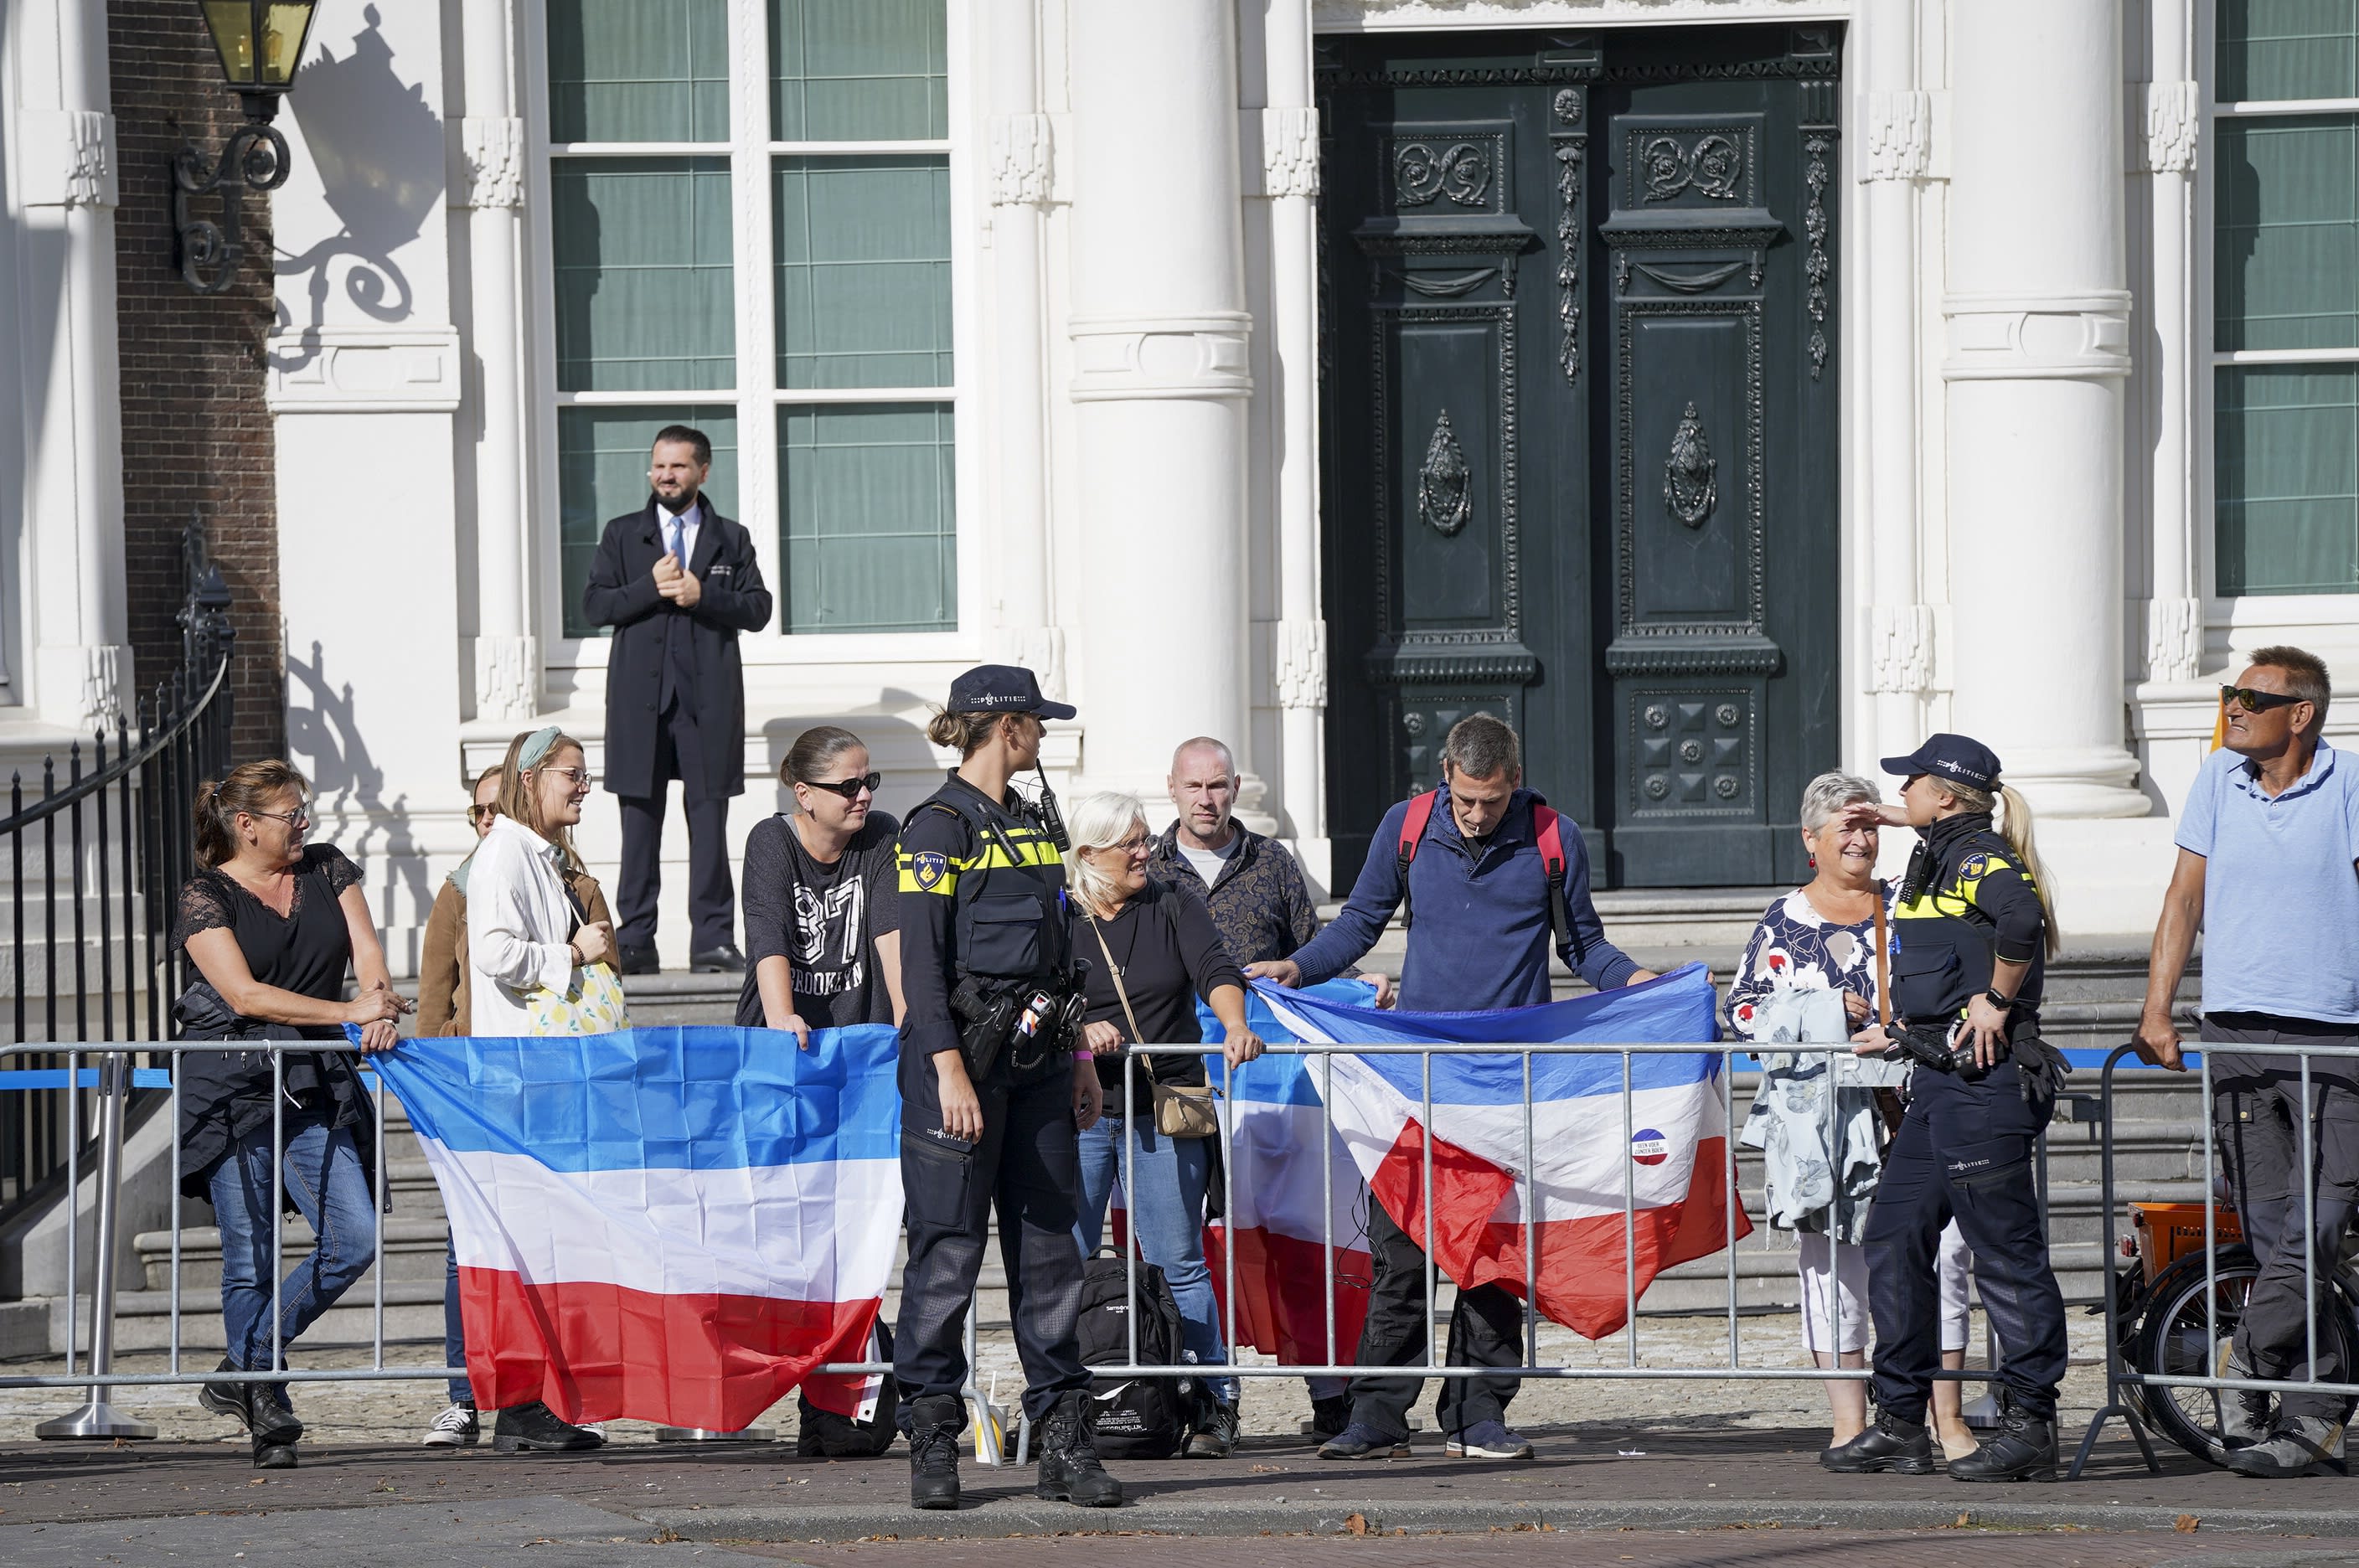 4 op 10 Nederlanders heeft nog minder vertrouwen in kabinet na Prinsjesdag